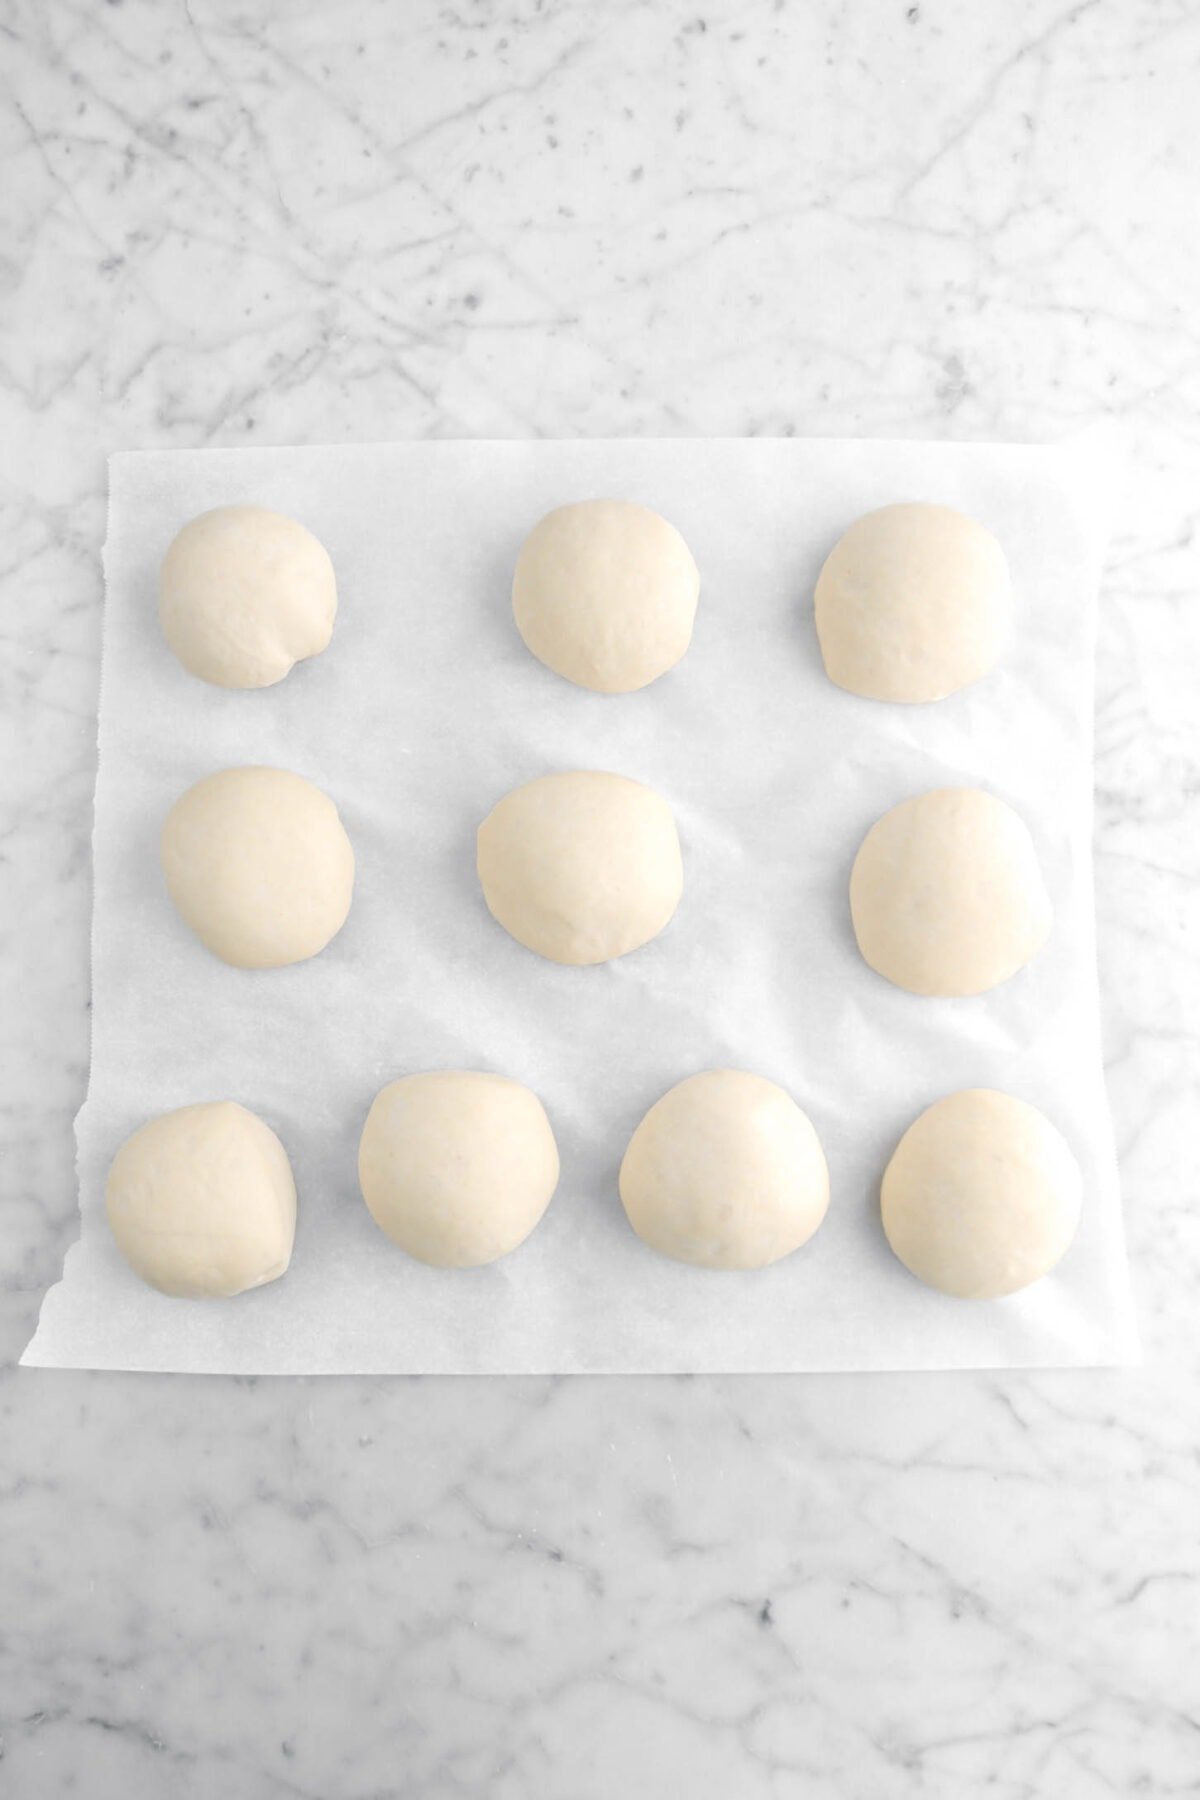 ten proofed dough balls on parchment paper